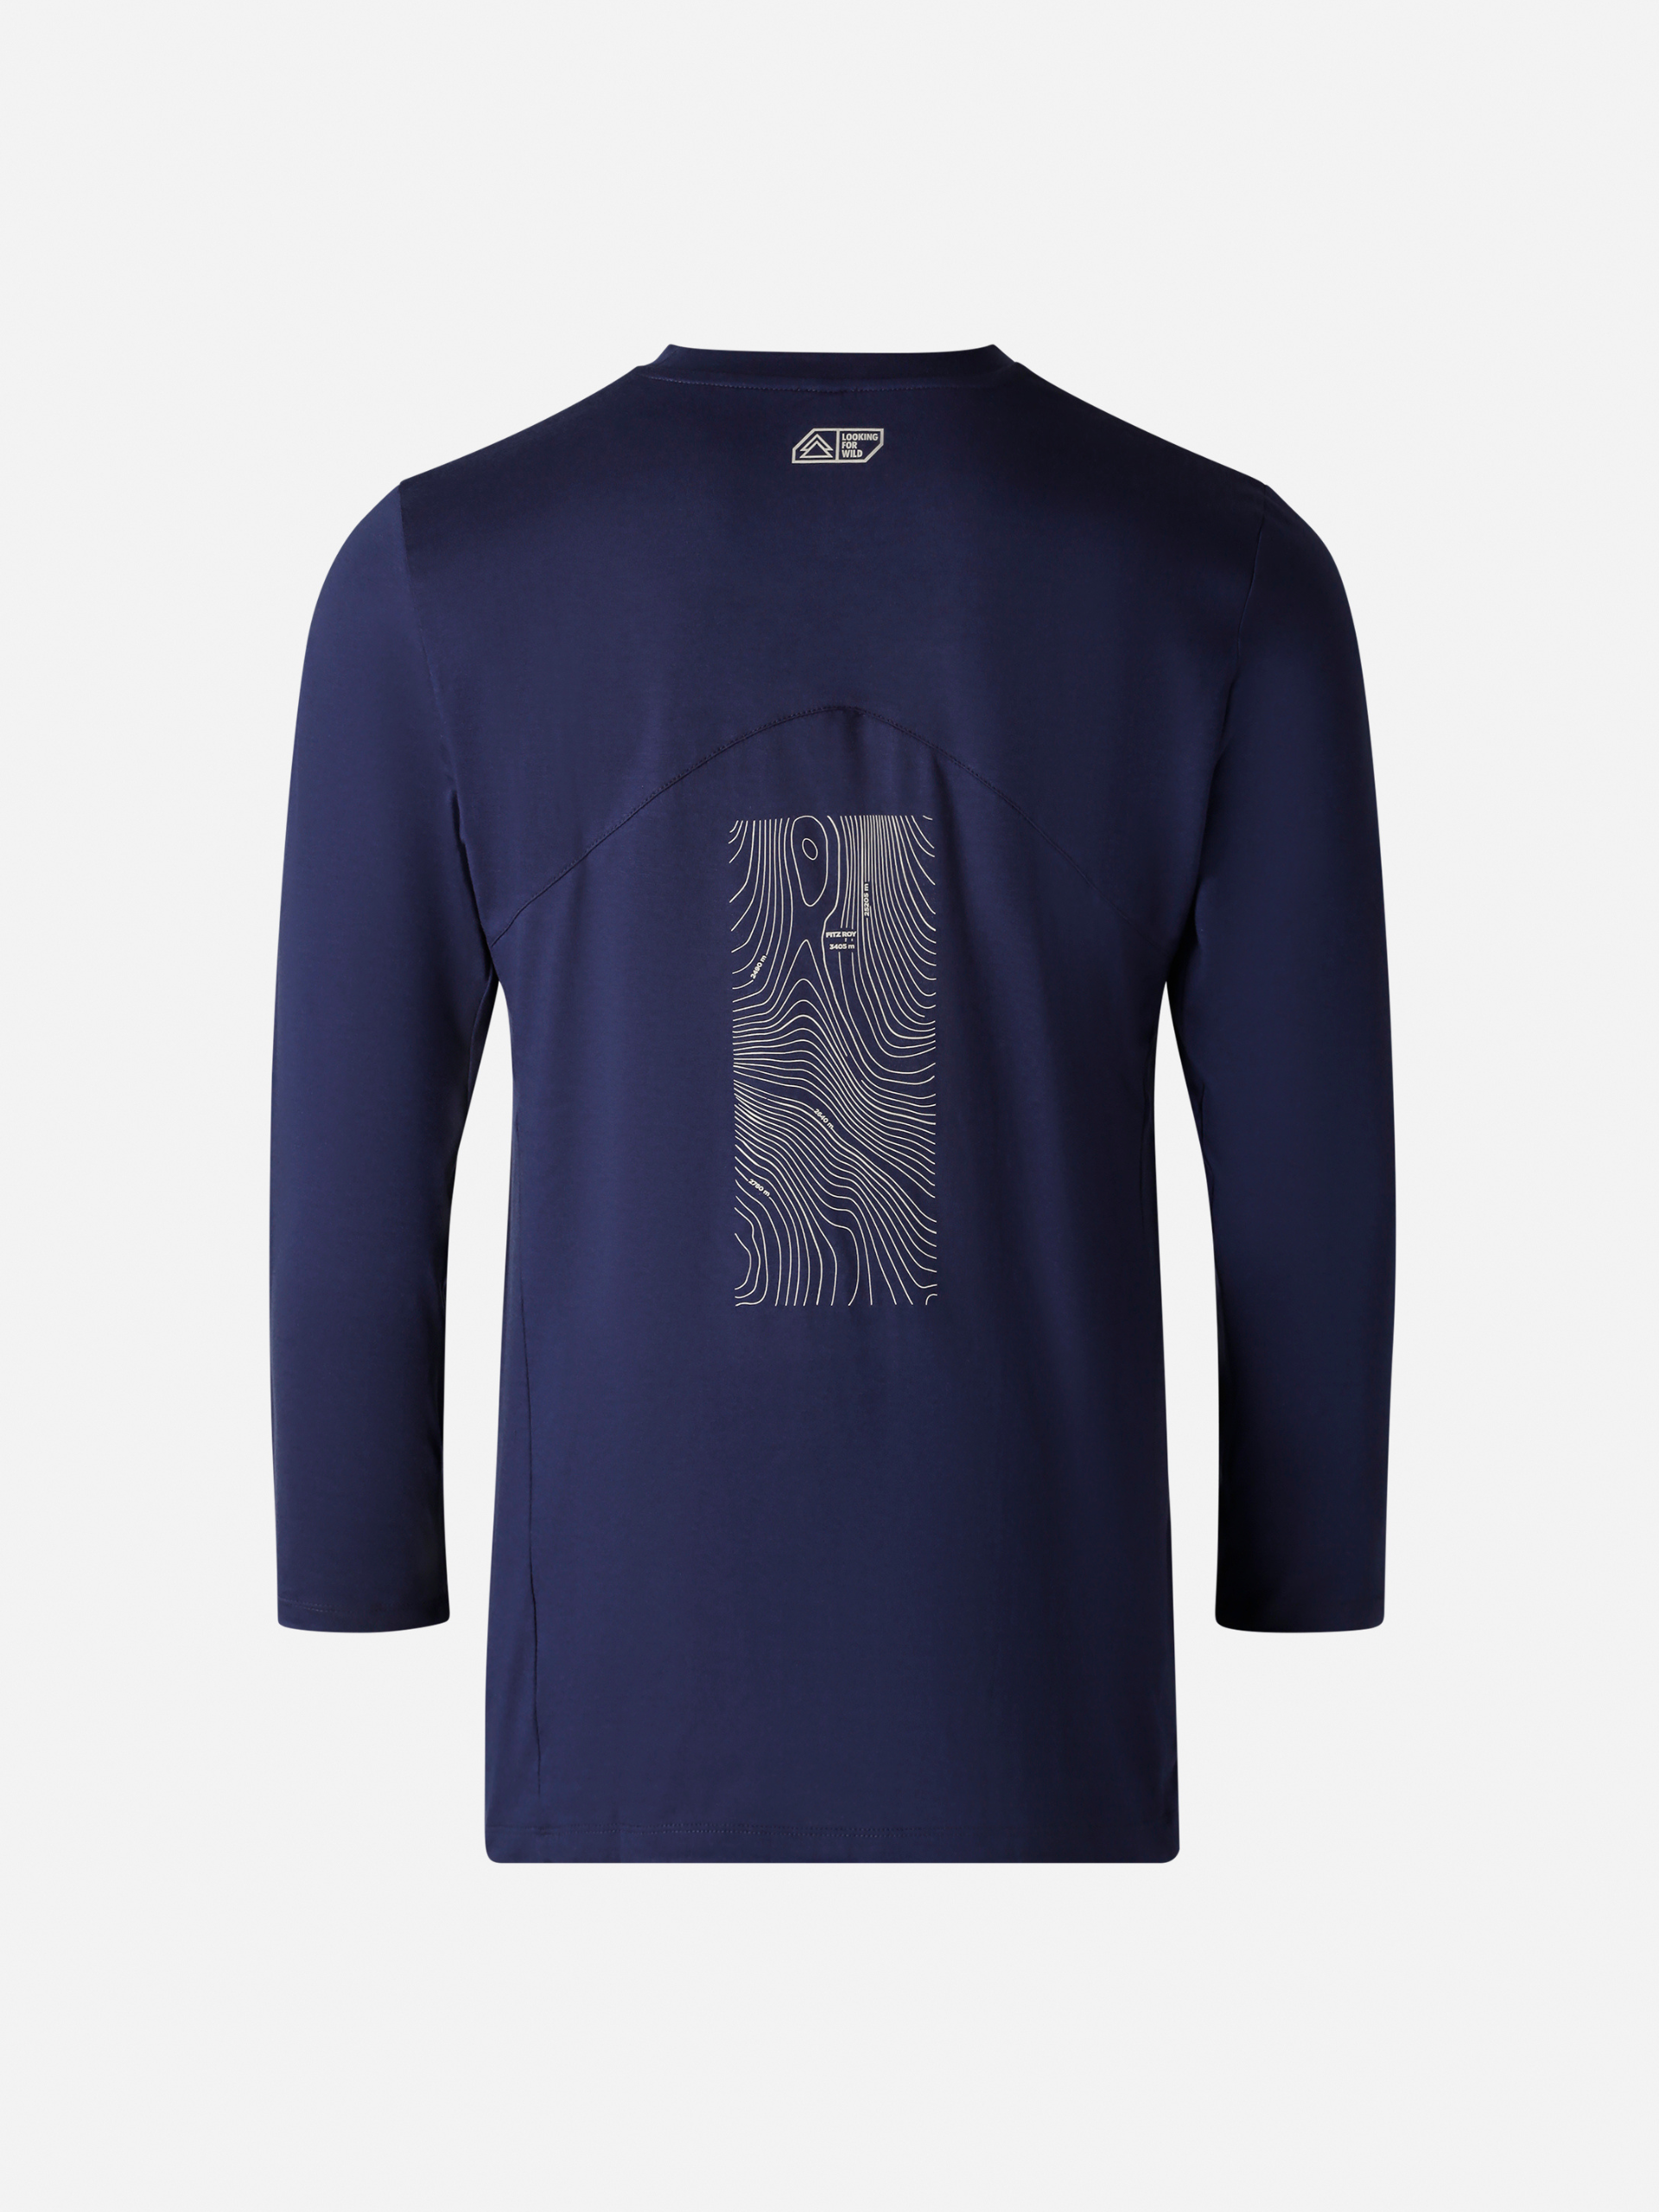 *Nouveau* T-Shirt Homme Graphite Medieval Blue